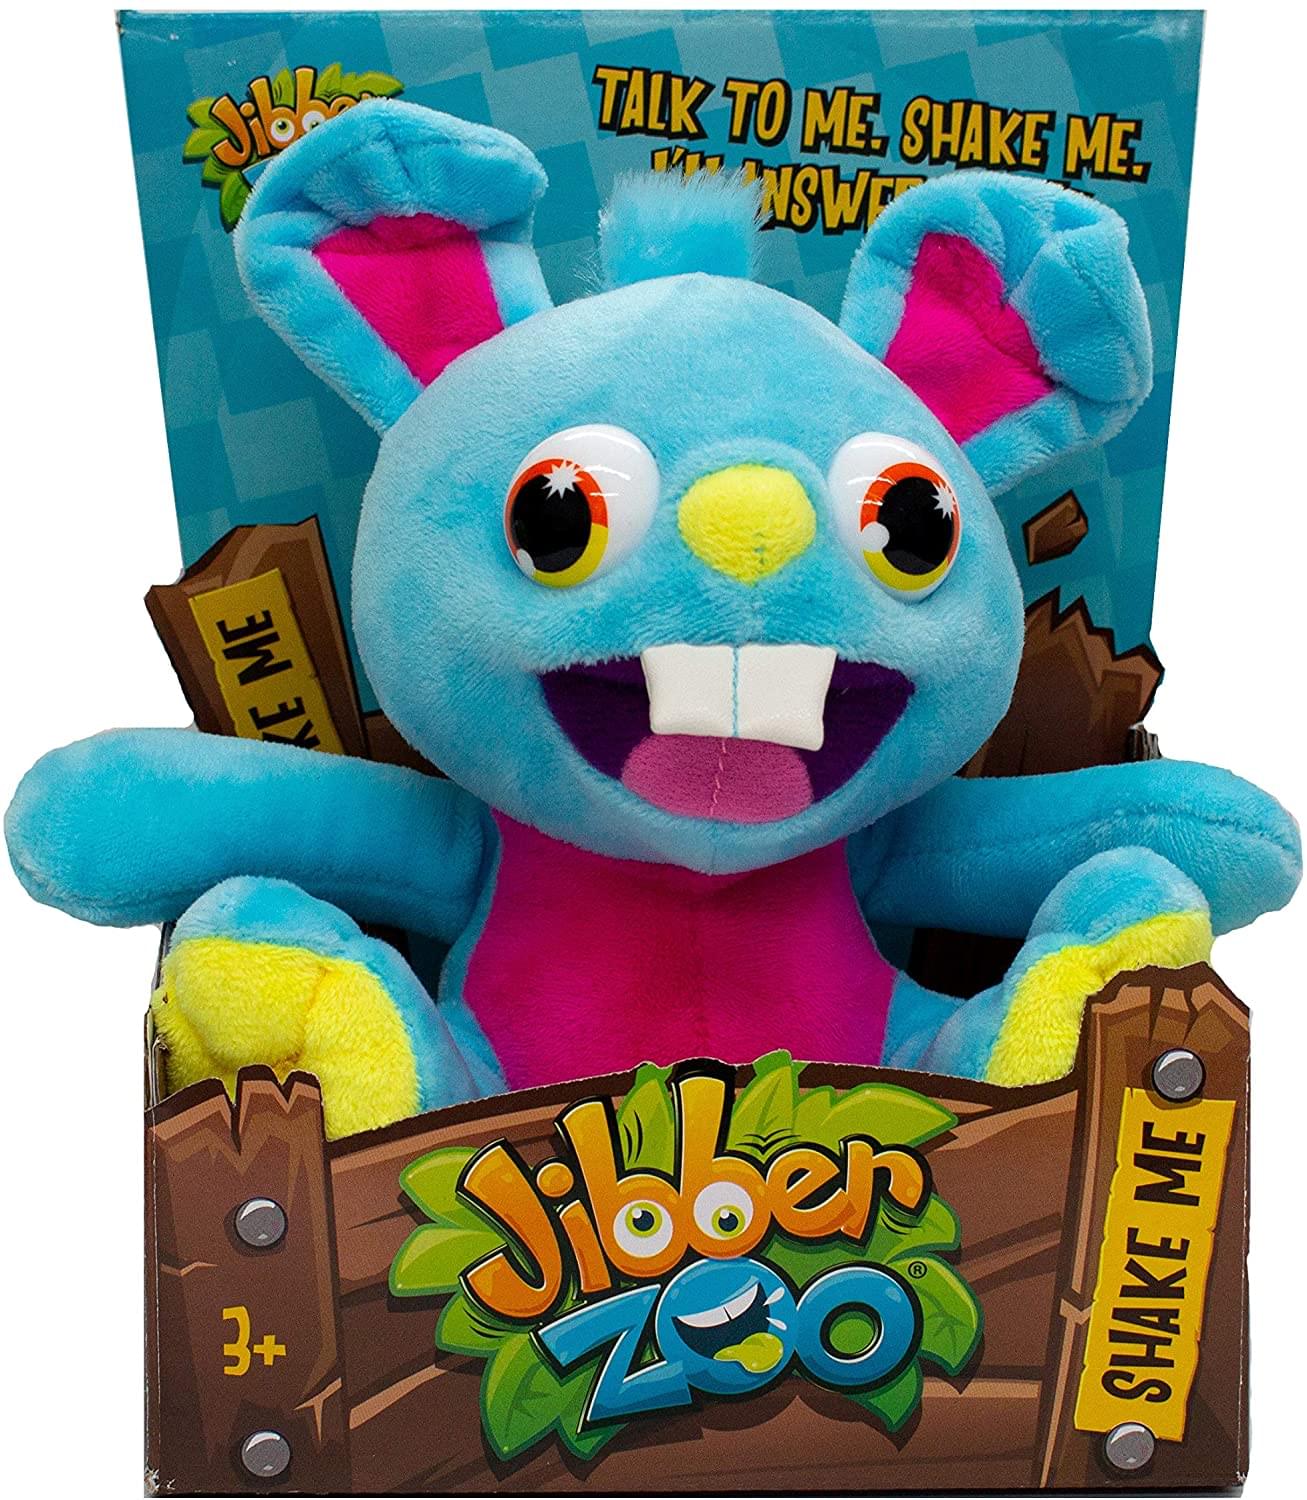 Jibber Zoo Interactive Plush Toy | Hoppy Bunny